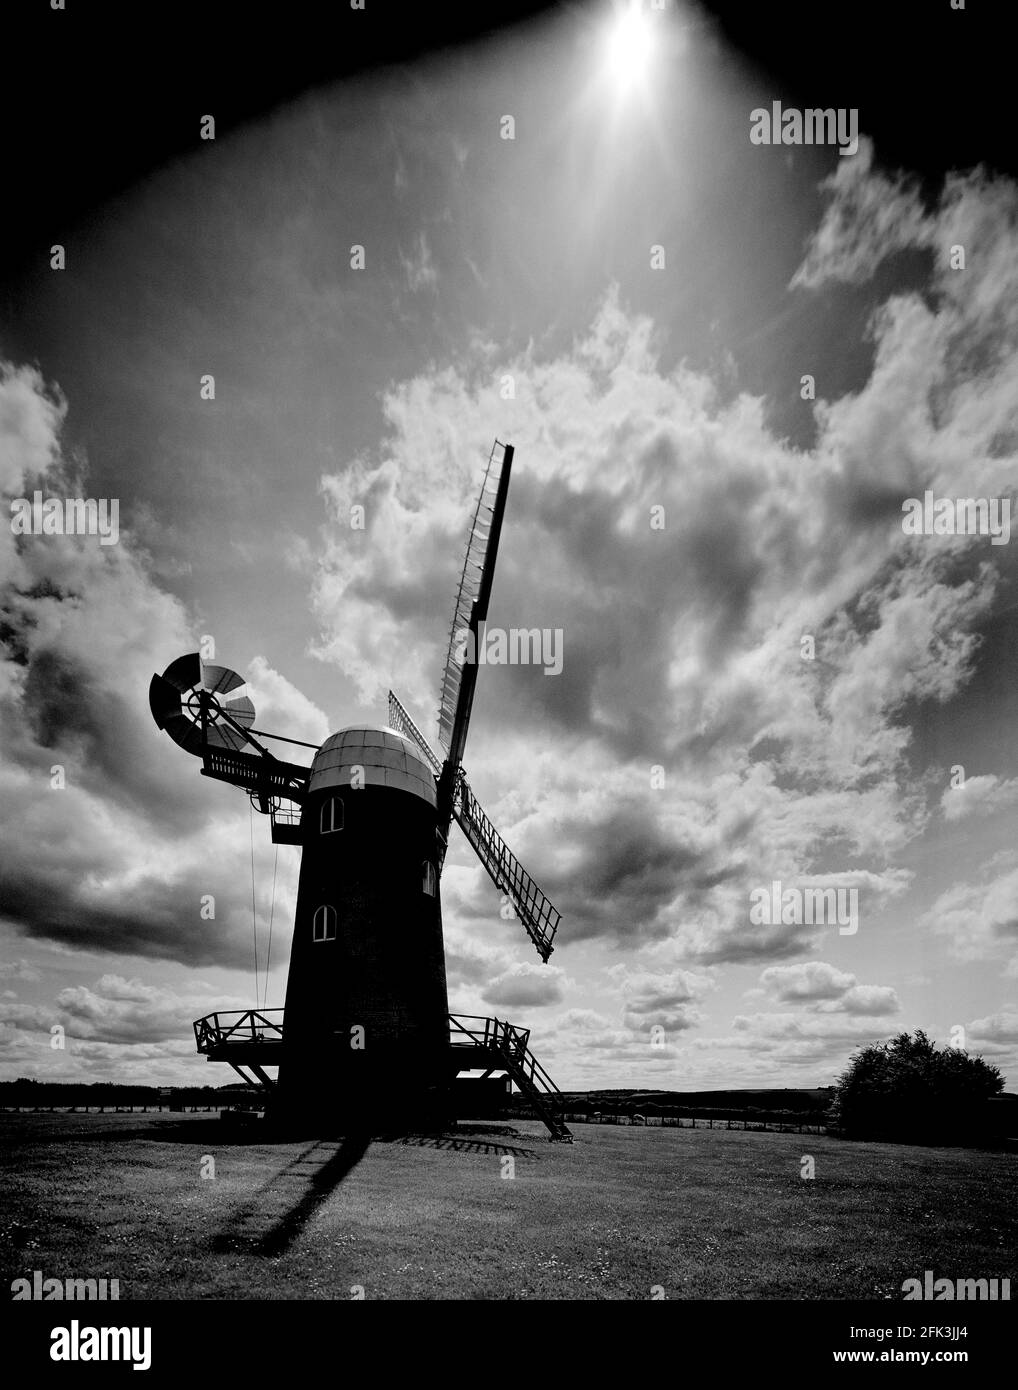 Wilton Windmill, North Wessex Downs, in der Nähe von Marlborough Wiltshire, England, Großbritannien, Schwarzweiß-Hochformat mit dramatischen Wolken und Himmel, Kopierbereich Stockfoto